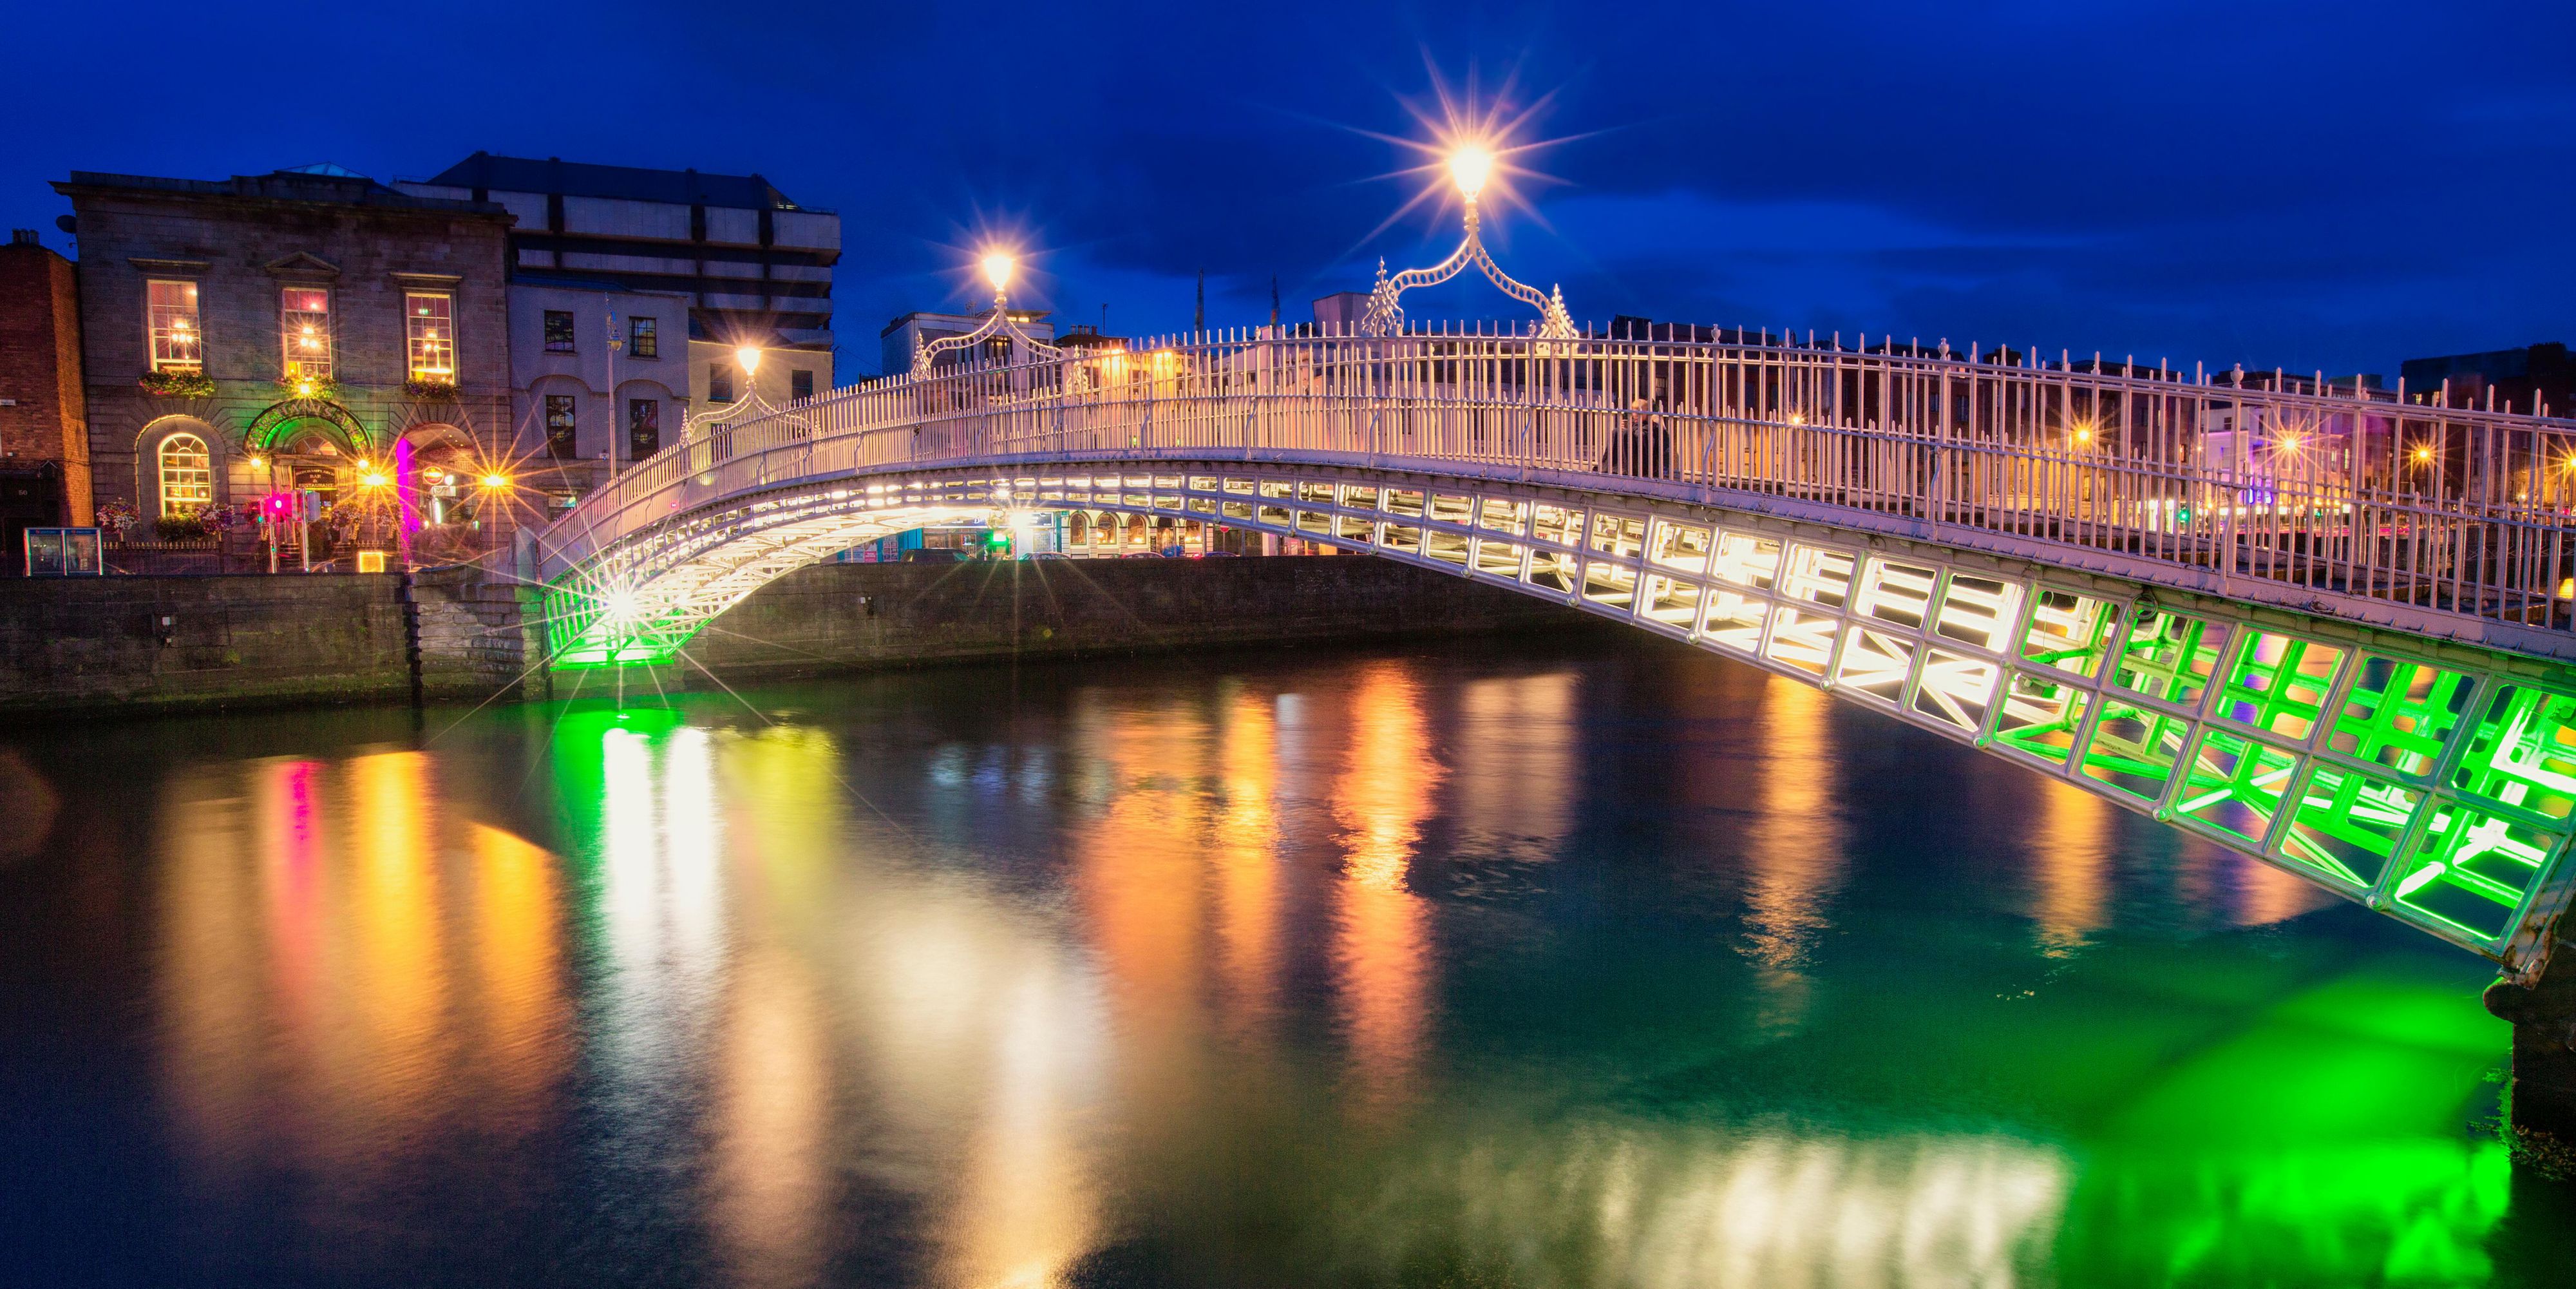 Bridge across a river in Dublin